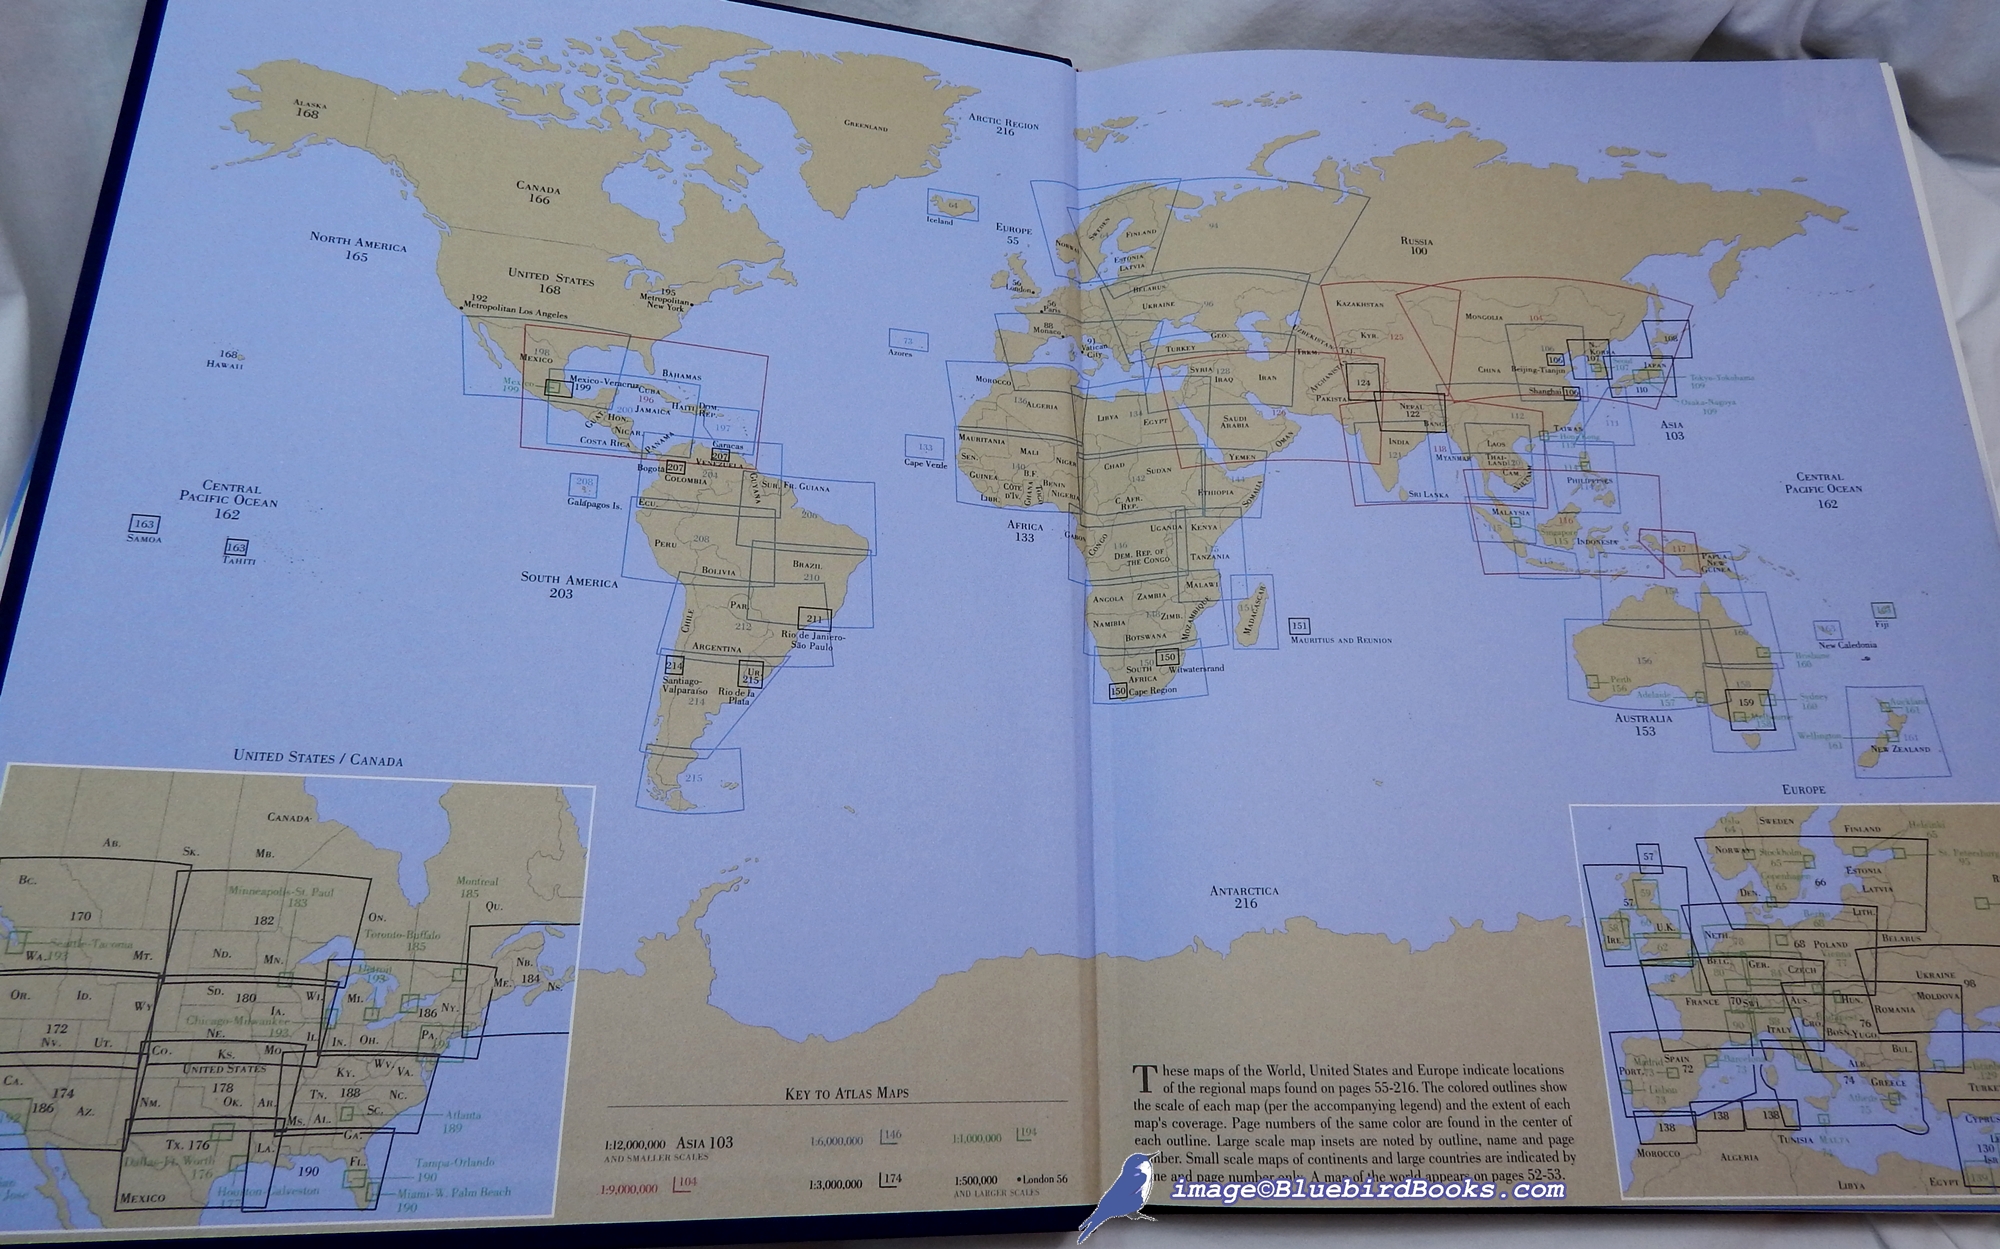 HAMMOND, C. DEAN; HAMMOND, KATHLEEN - Hammond Atlas of the World: Second Edition